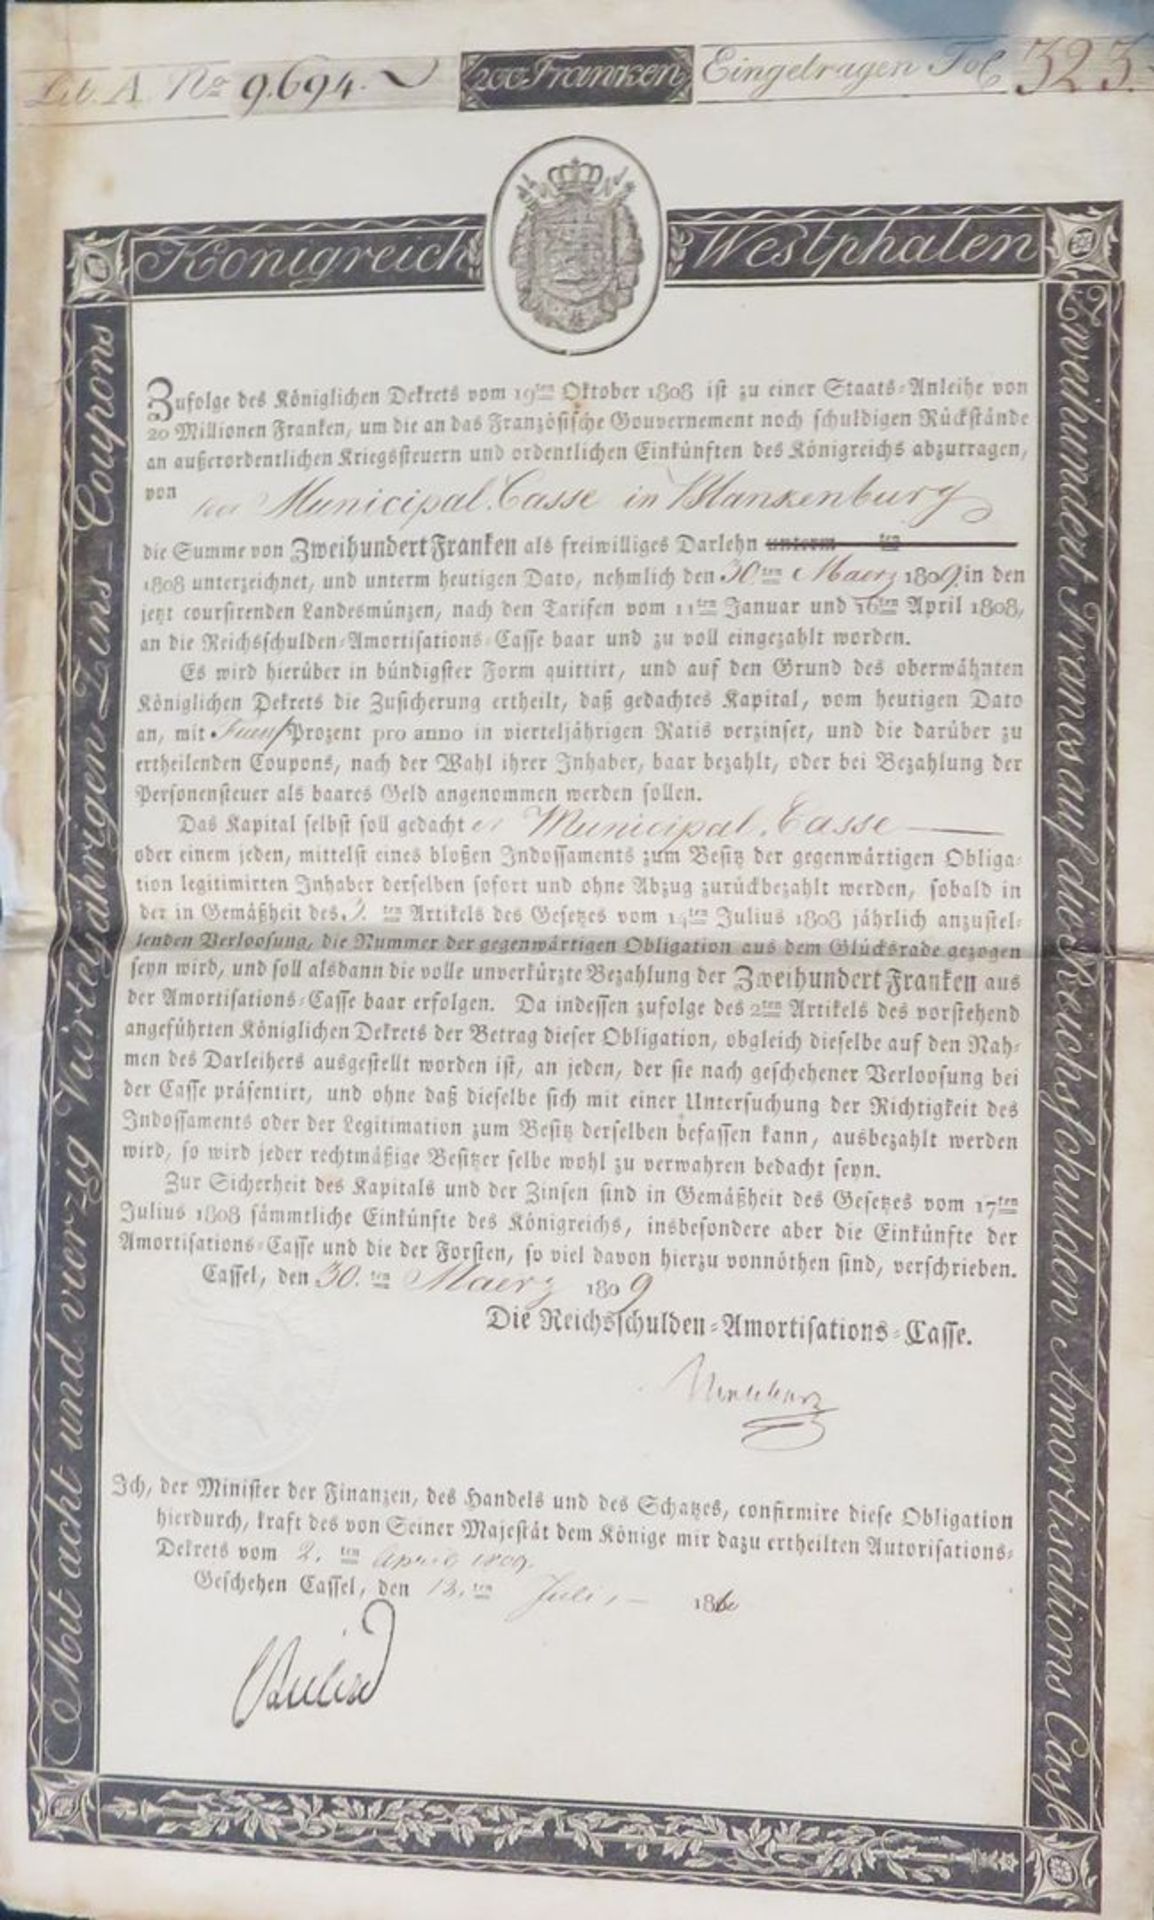 Obligation des Königreichs Westphalen über 200 Franken inkl. 5 1/2 Blatt Zinscoupons. - Bild 3 aus 3